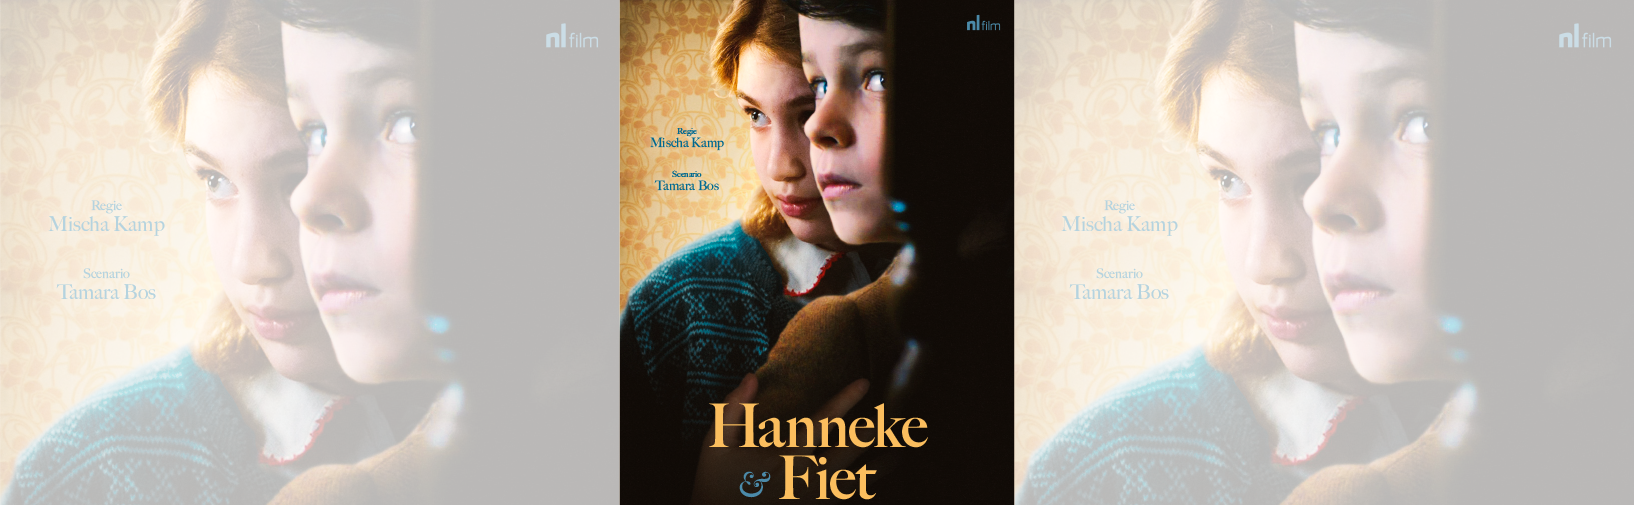 NL Film productie Hanneke & Fiet op Cinekid junior co-productiemarkt hero image